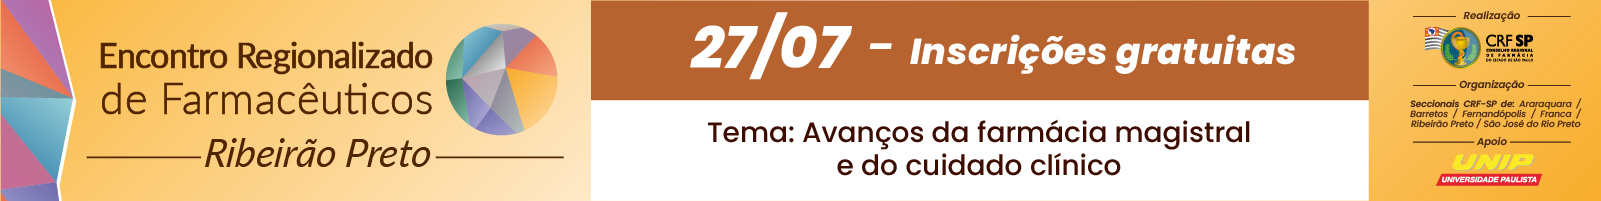 Banner em tons de amarelo e marrom com a lateral colorida e com a informação Encontro Regionalizado de Farmacêuticos -Ribeirão Preto - 27/07 inscrições gratuitas  